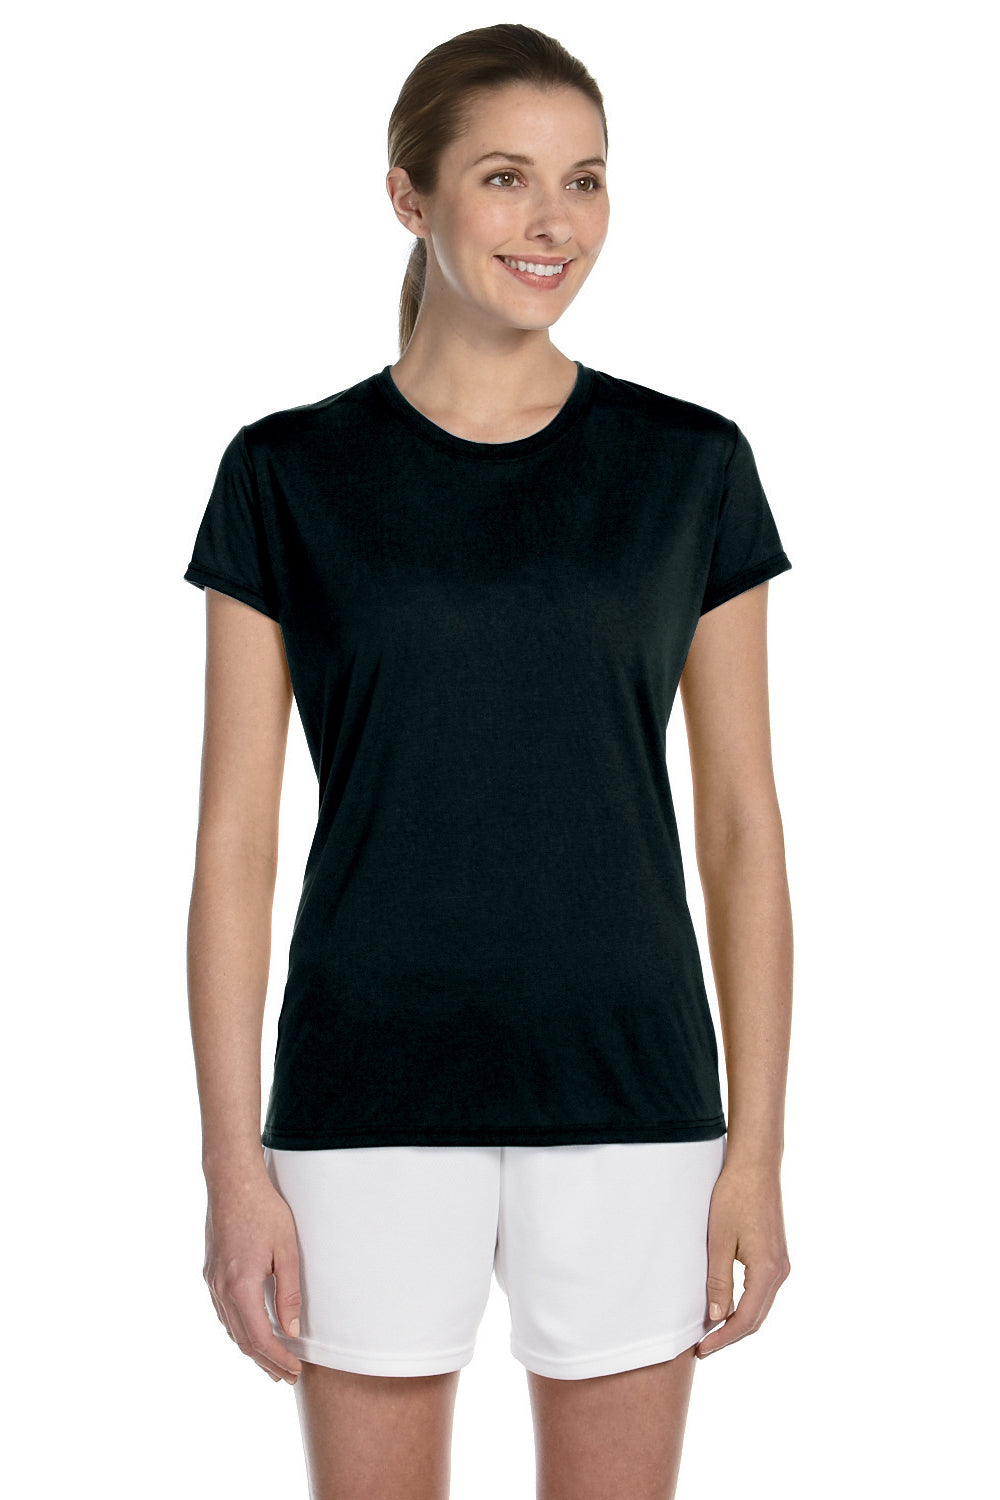 Gildan G420L Womens Performance Jersey Moisture Wicking Short Sleeve Crewneck T-Shirt Black Front